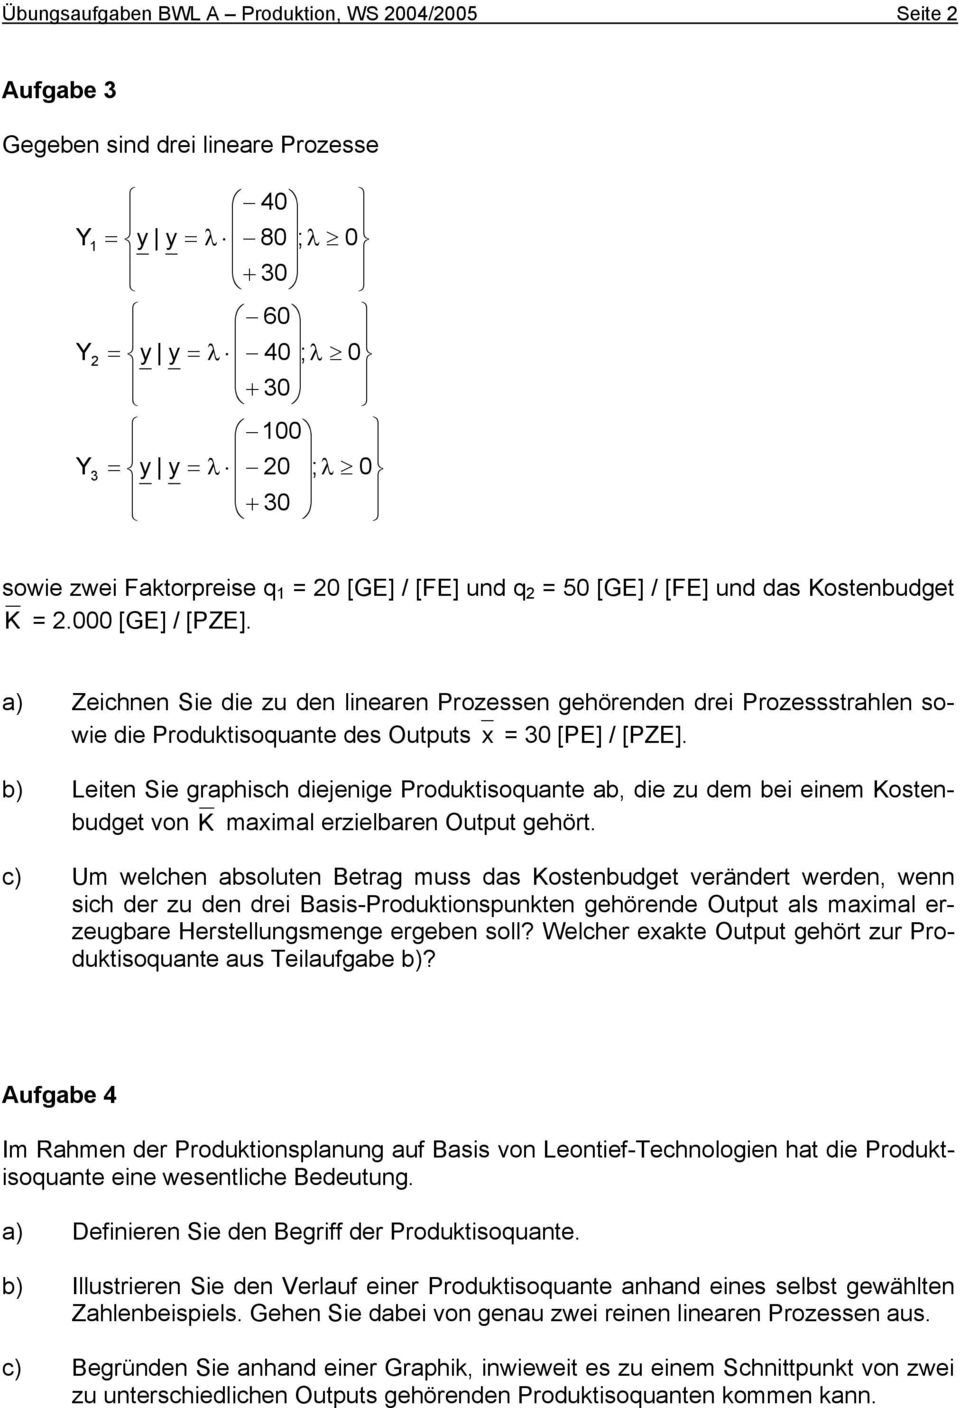 a) Zeichnen Sie die zu den linearen Prozessen gehörenden drei Prozessstrahlen sowie die Produktisoquante des Outputs x = 3 [PE] / [PZE].